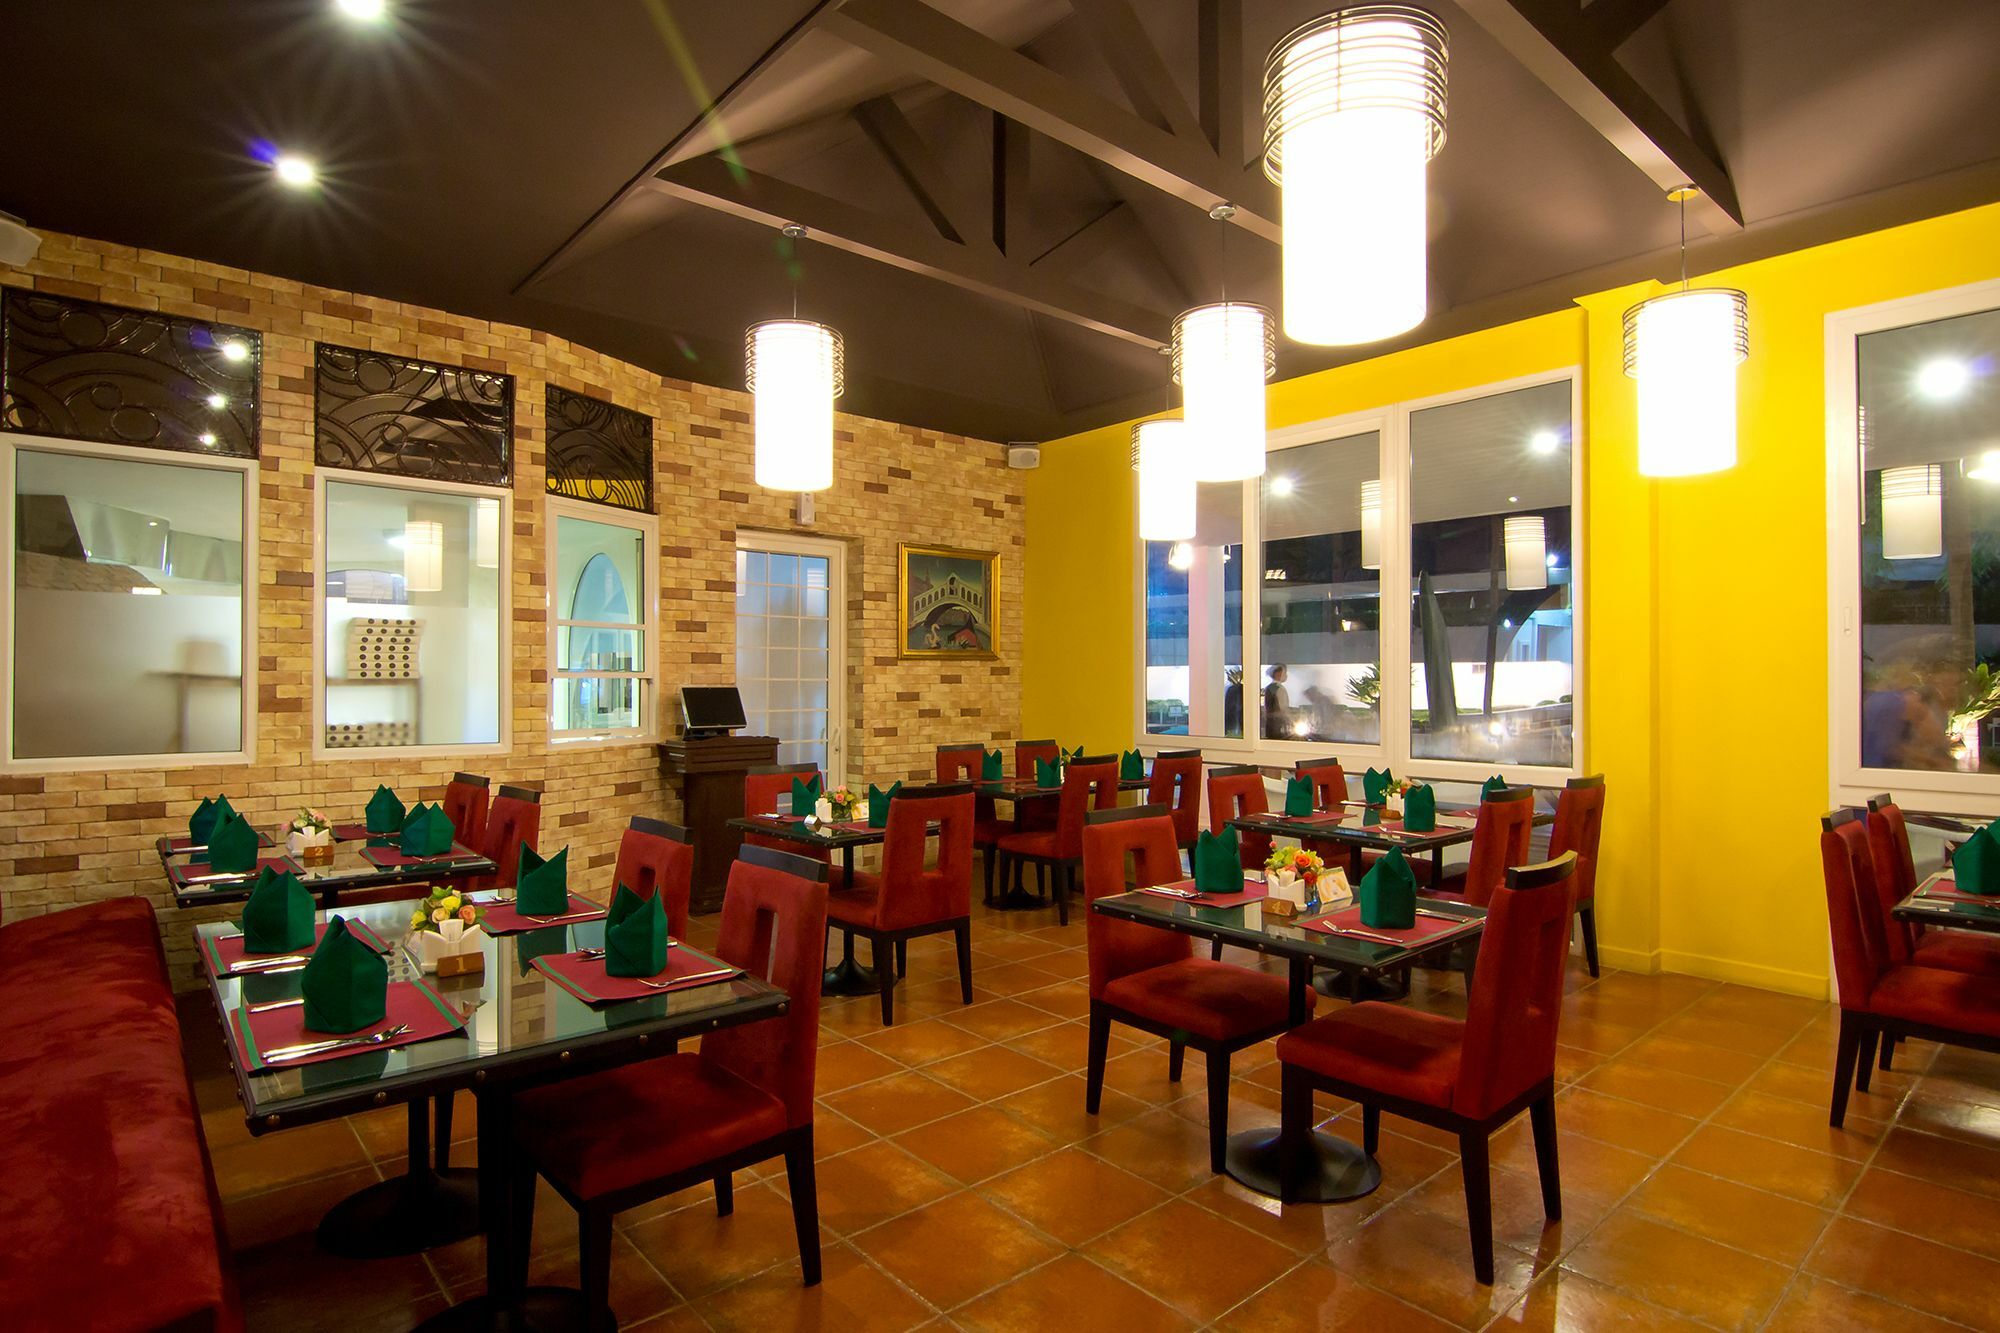 แอมบาสซาเดอร์ ซิตี้ จอมเทียน พัทยา - มารีนา ทาวเวอร์ วิง Hotel Pattaya ภายนอก รูปภาพ